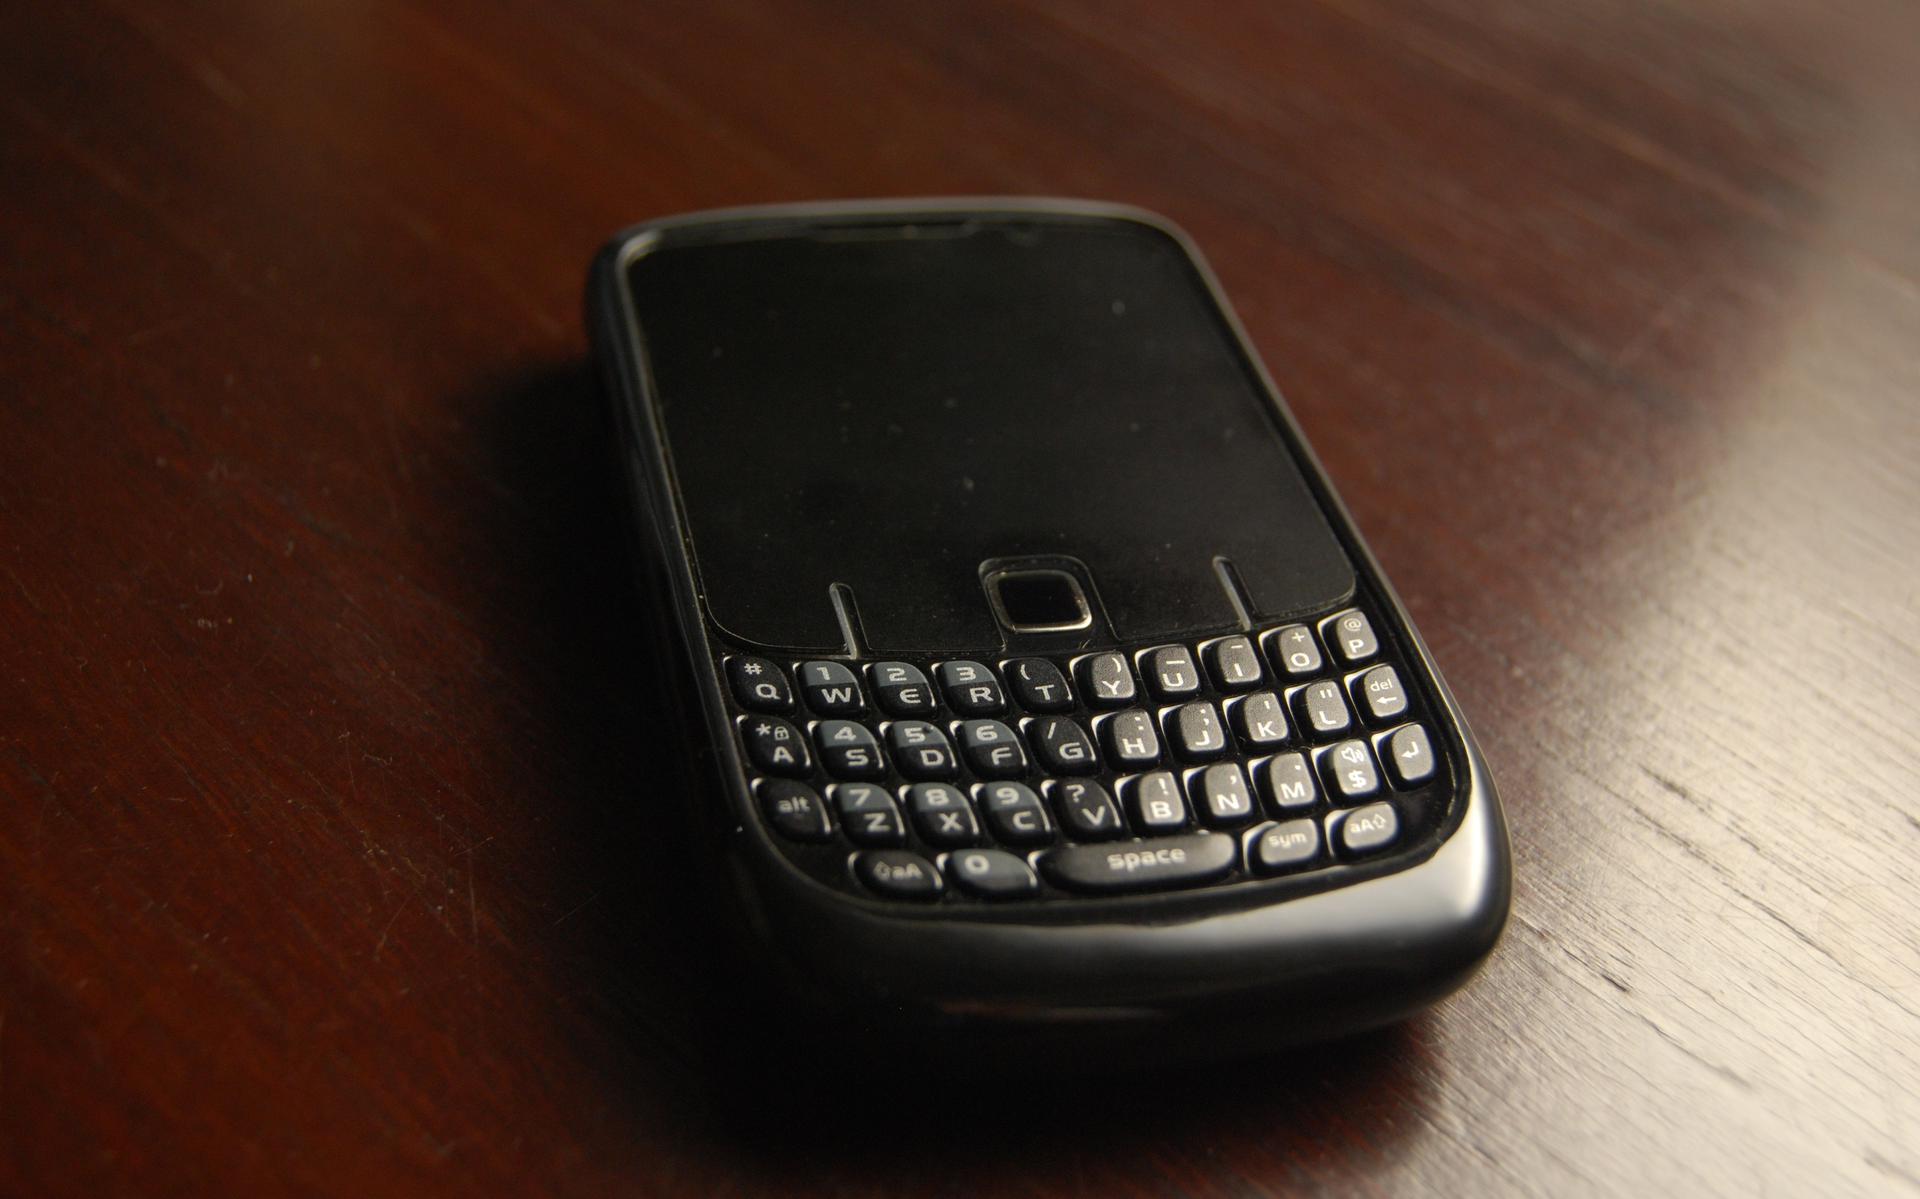 Toestellen van het merk Blackberry worden vaak door criminelen gebruikt voor versleutelde communicatie.